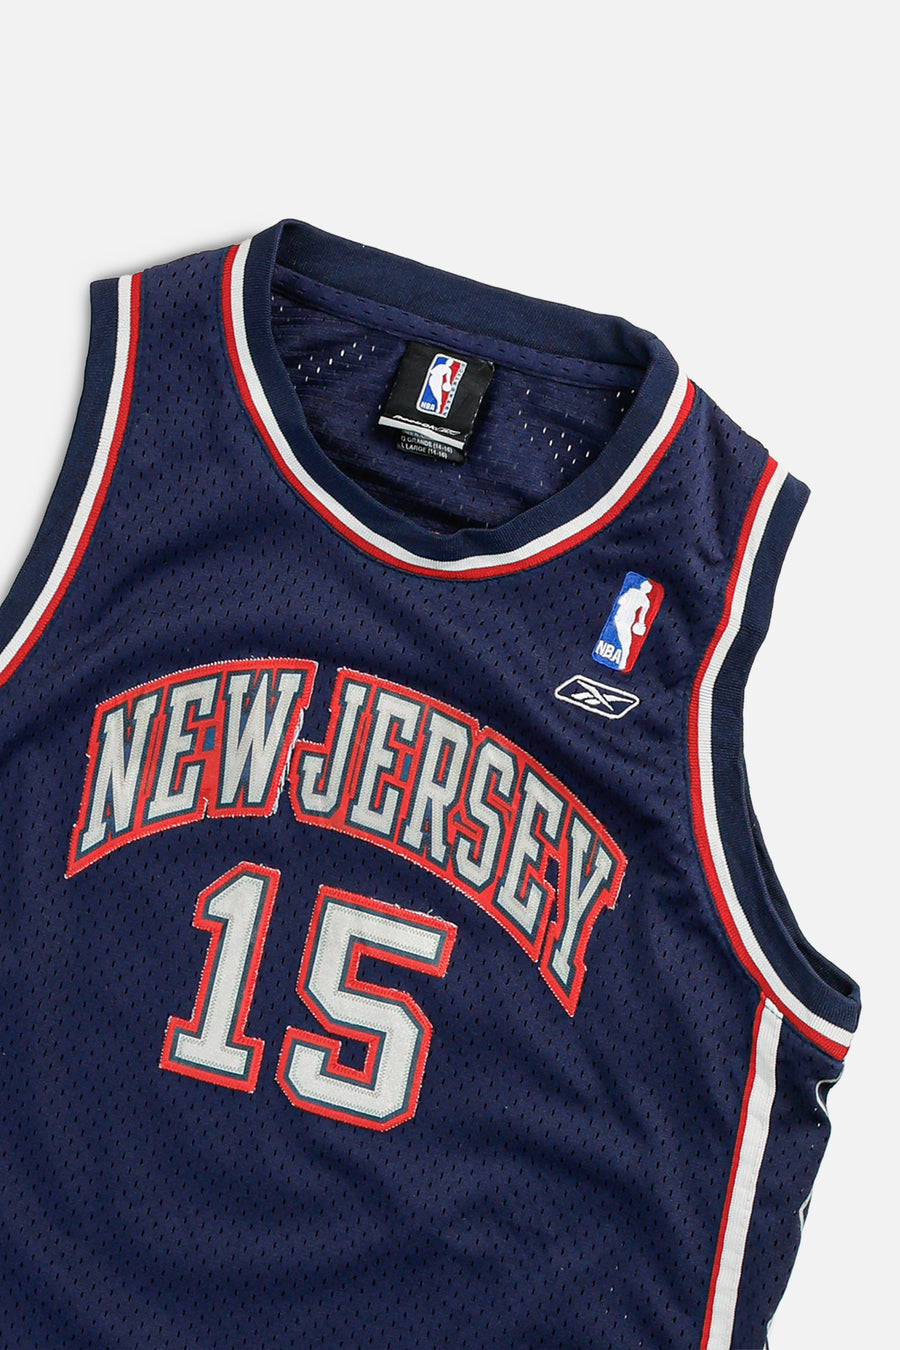 Vintage New Jersey Nets NBA Jersey - Women's S